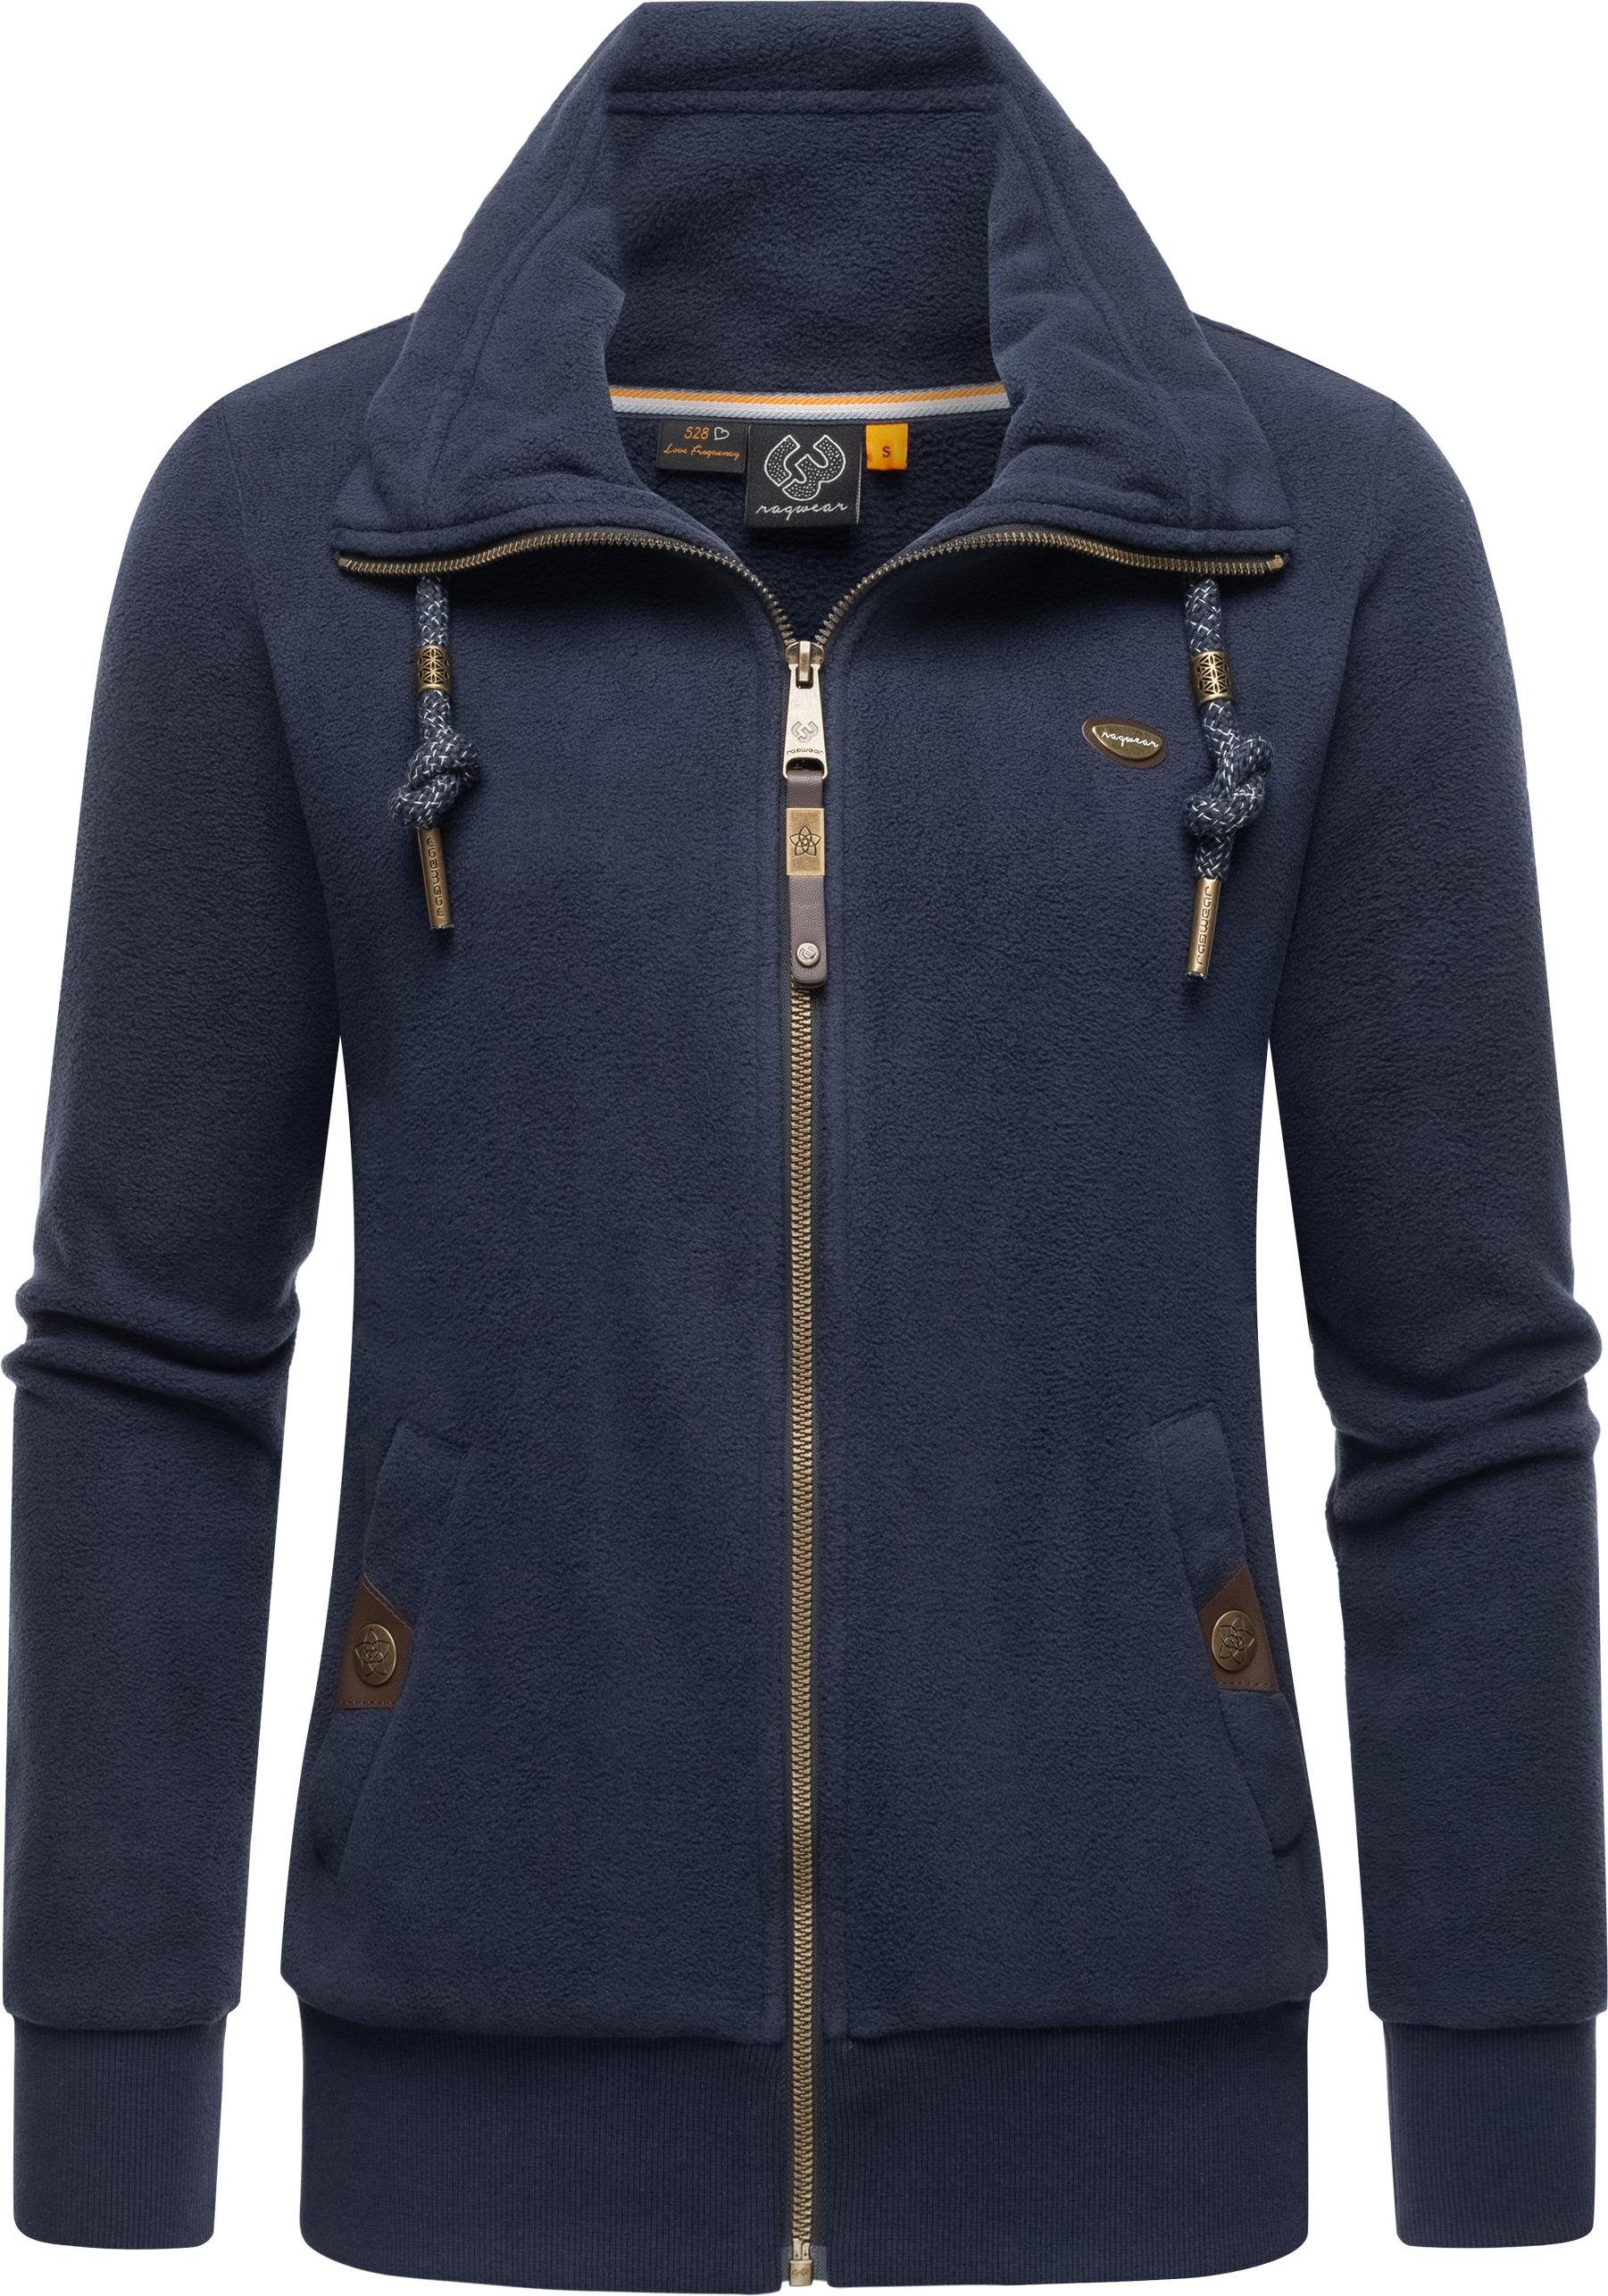 Ragwear Sweatjacke Rylie Fleece Zip Solid weicher Fleece Zip-Sweater mit Kordeln navy